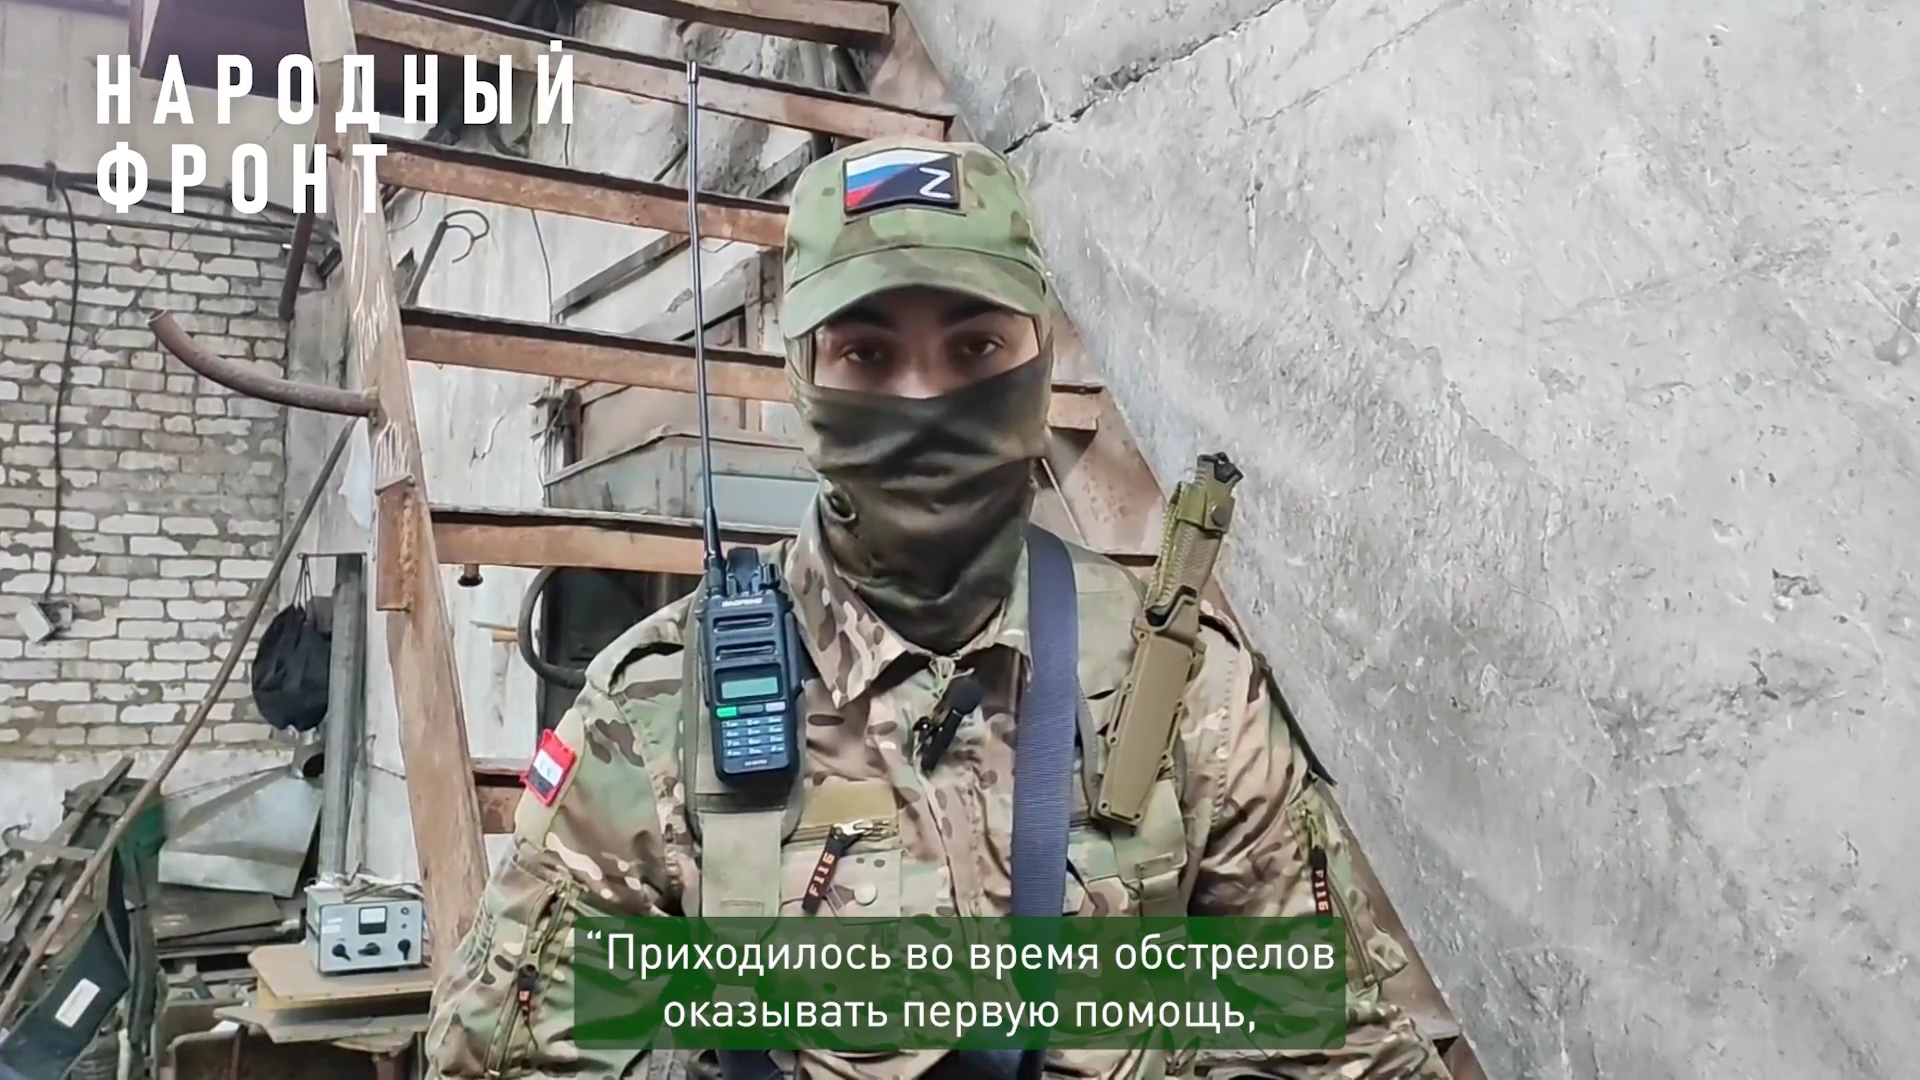 Участник СВО из Ярославля рассказал о помощи раненым на поле боя